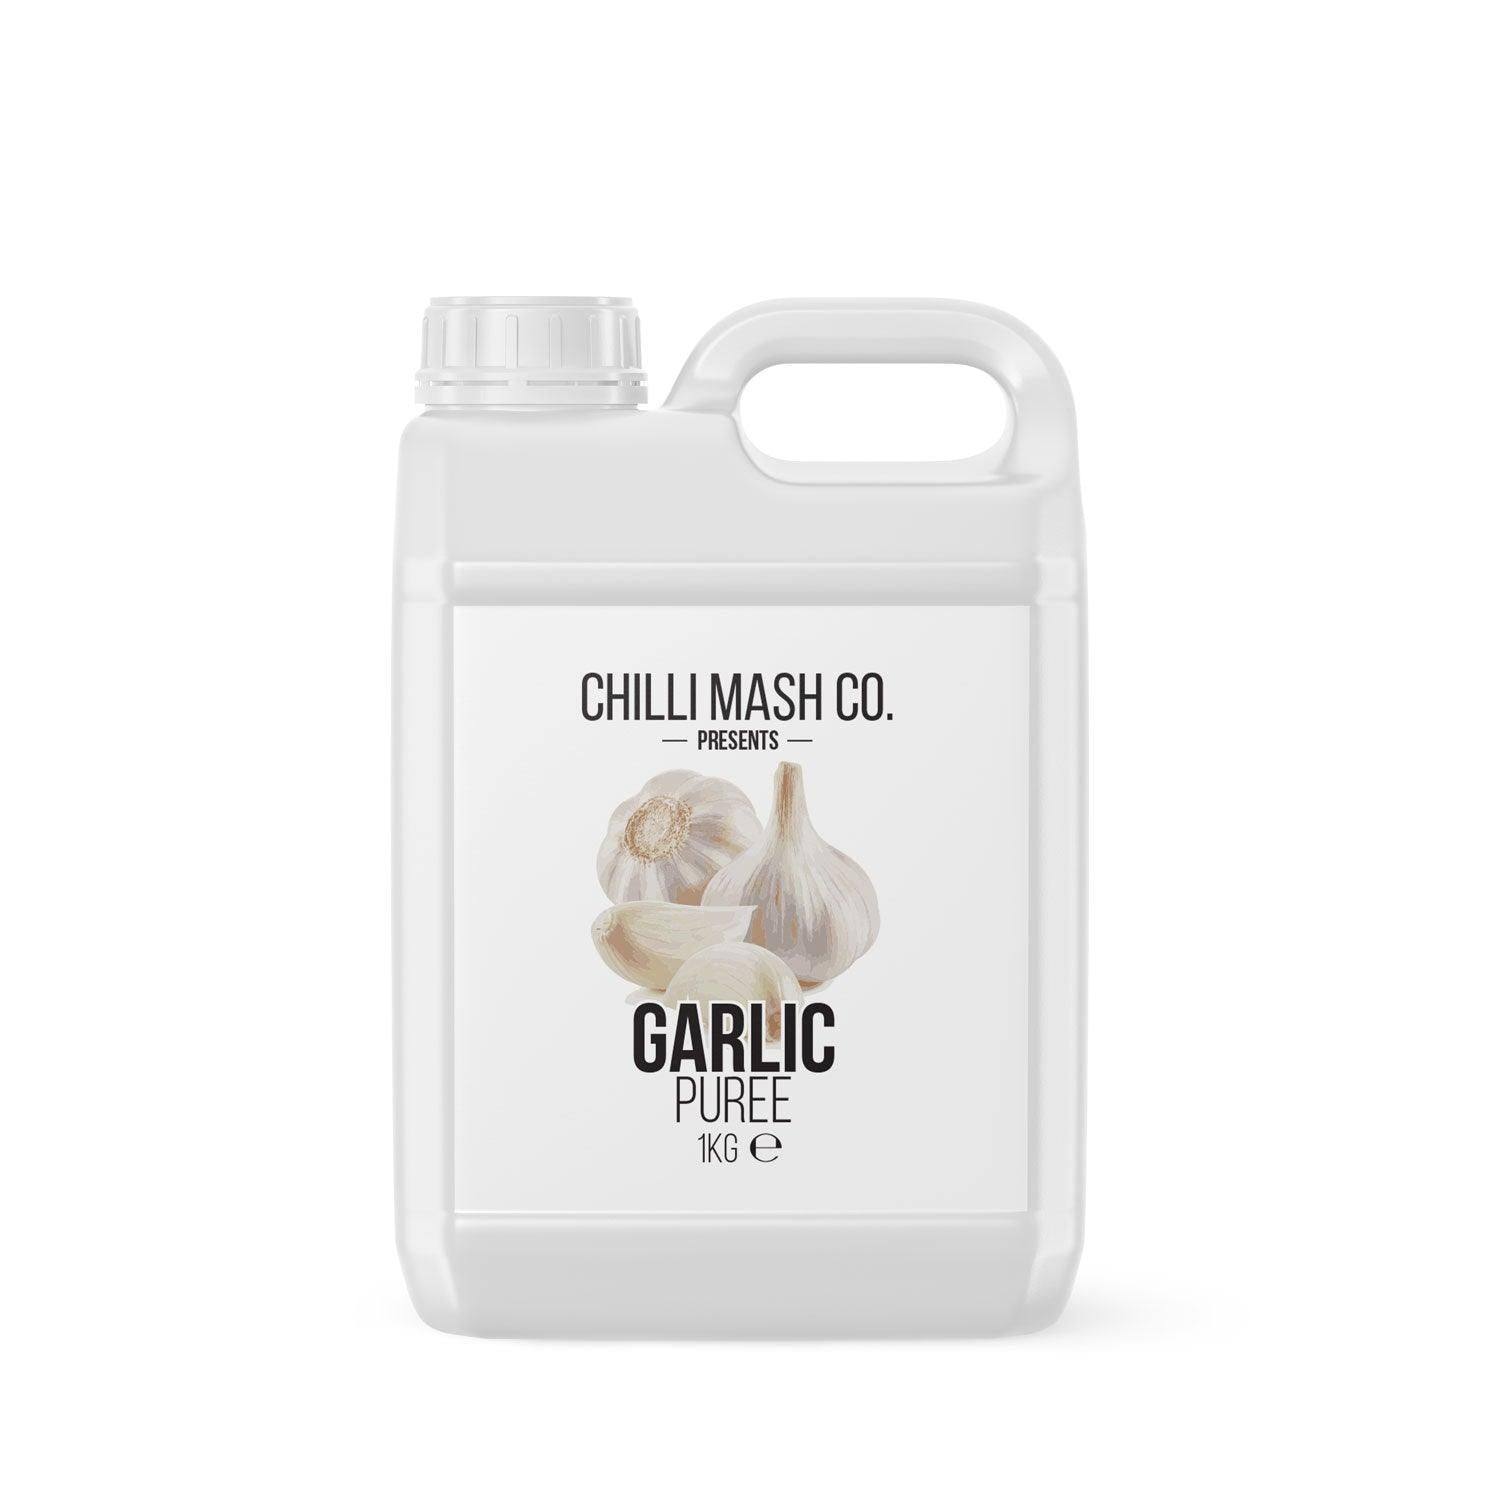 Garlic Puree | 1kg | Chilli Mash Co. - One Stop Chilli Shop